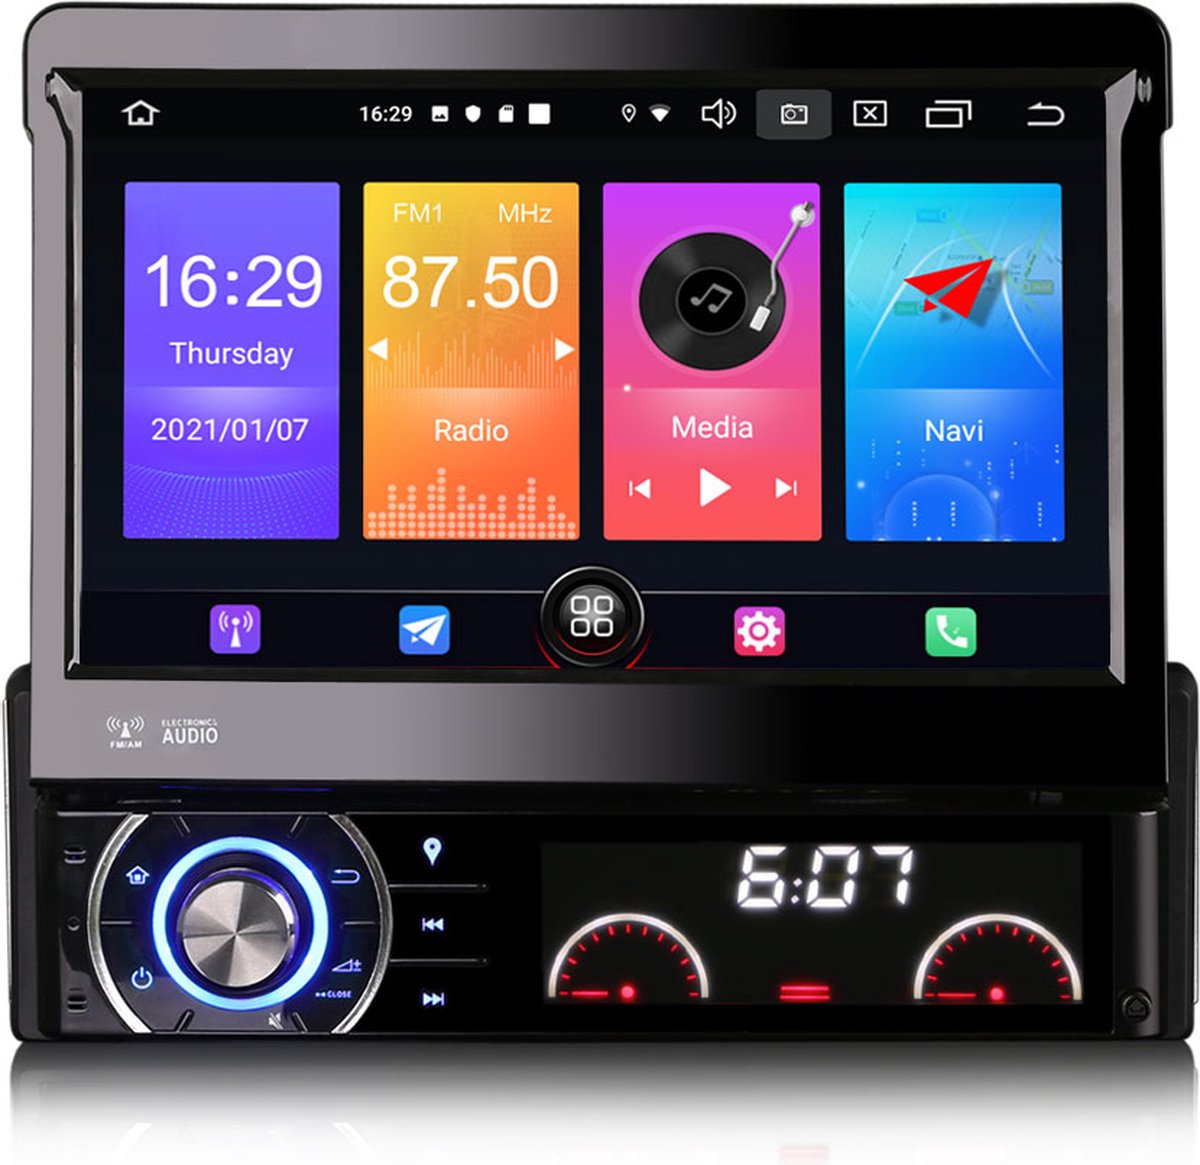 1din autoradio met klapscherm navigatie, DVD-speler, AUX, USB en  Bluetooth-interface voor